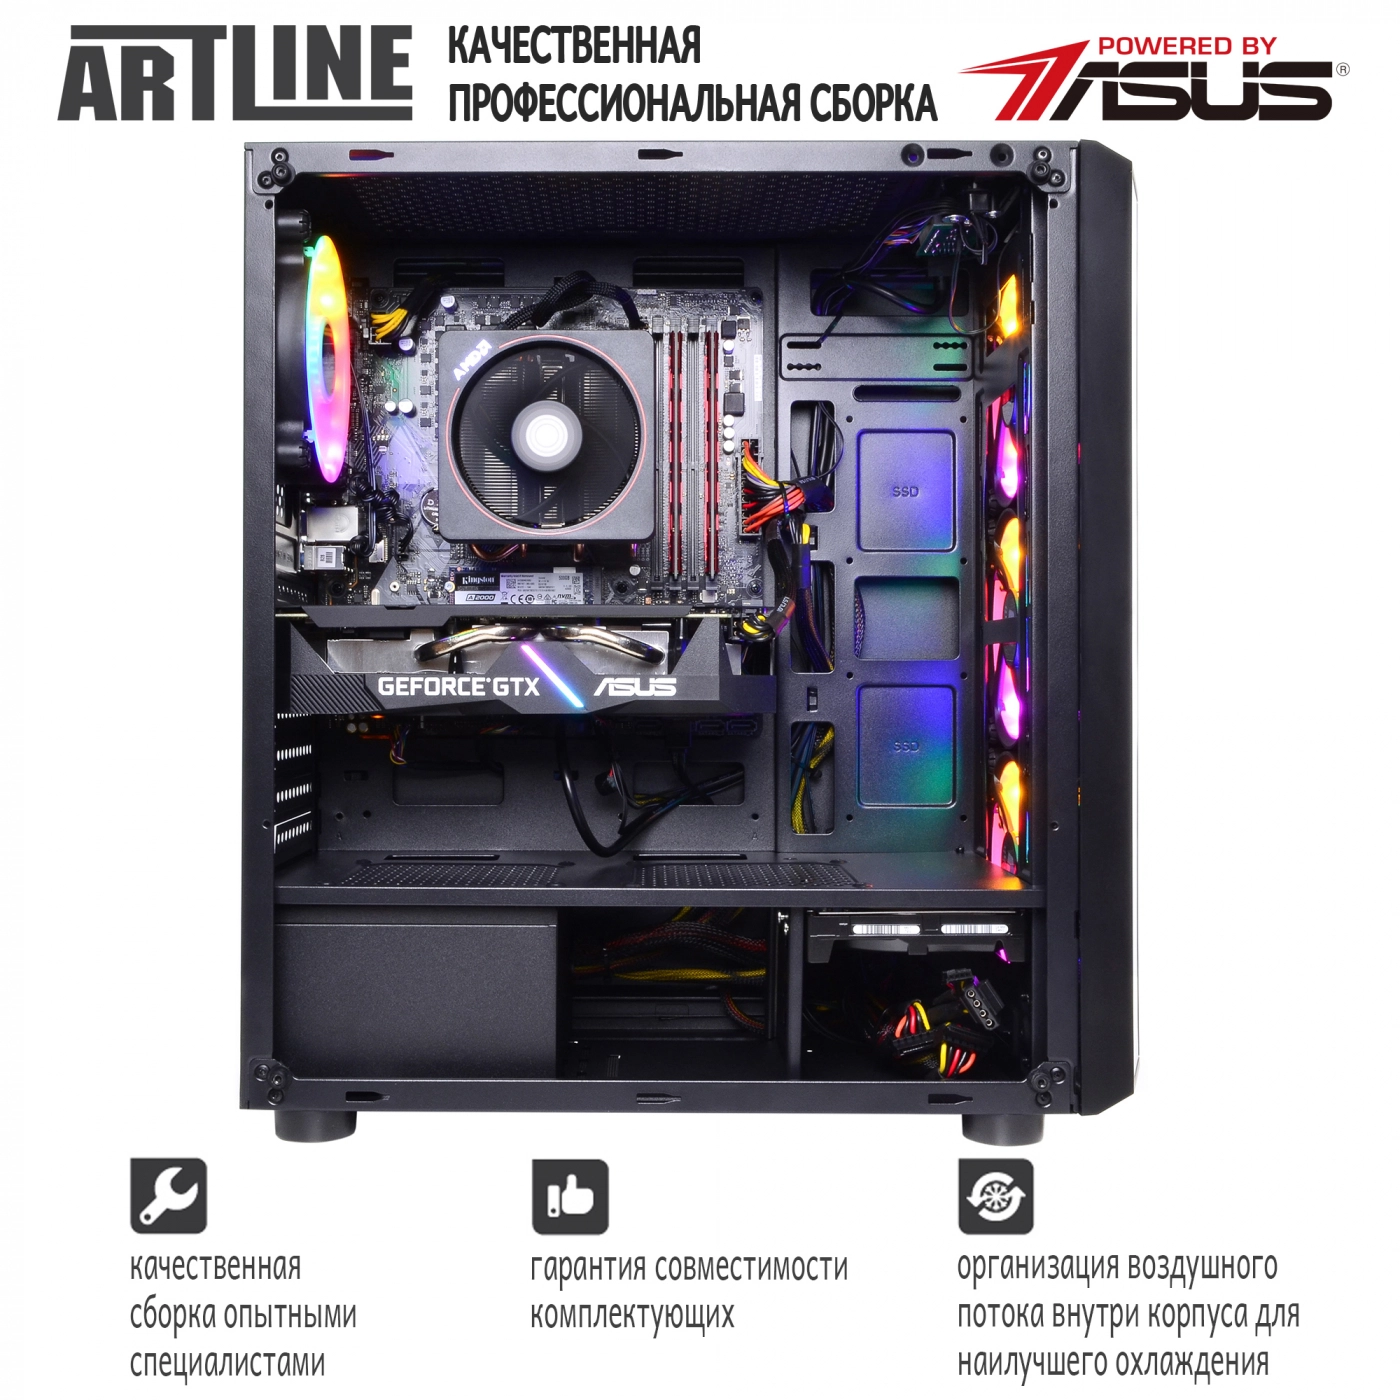 Купить Компьютер ARTLINE Gaming X43v12 - фото 8